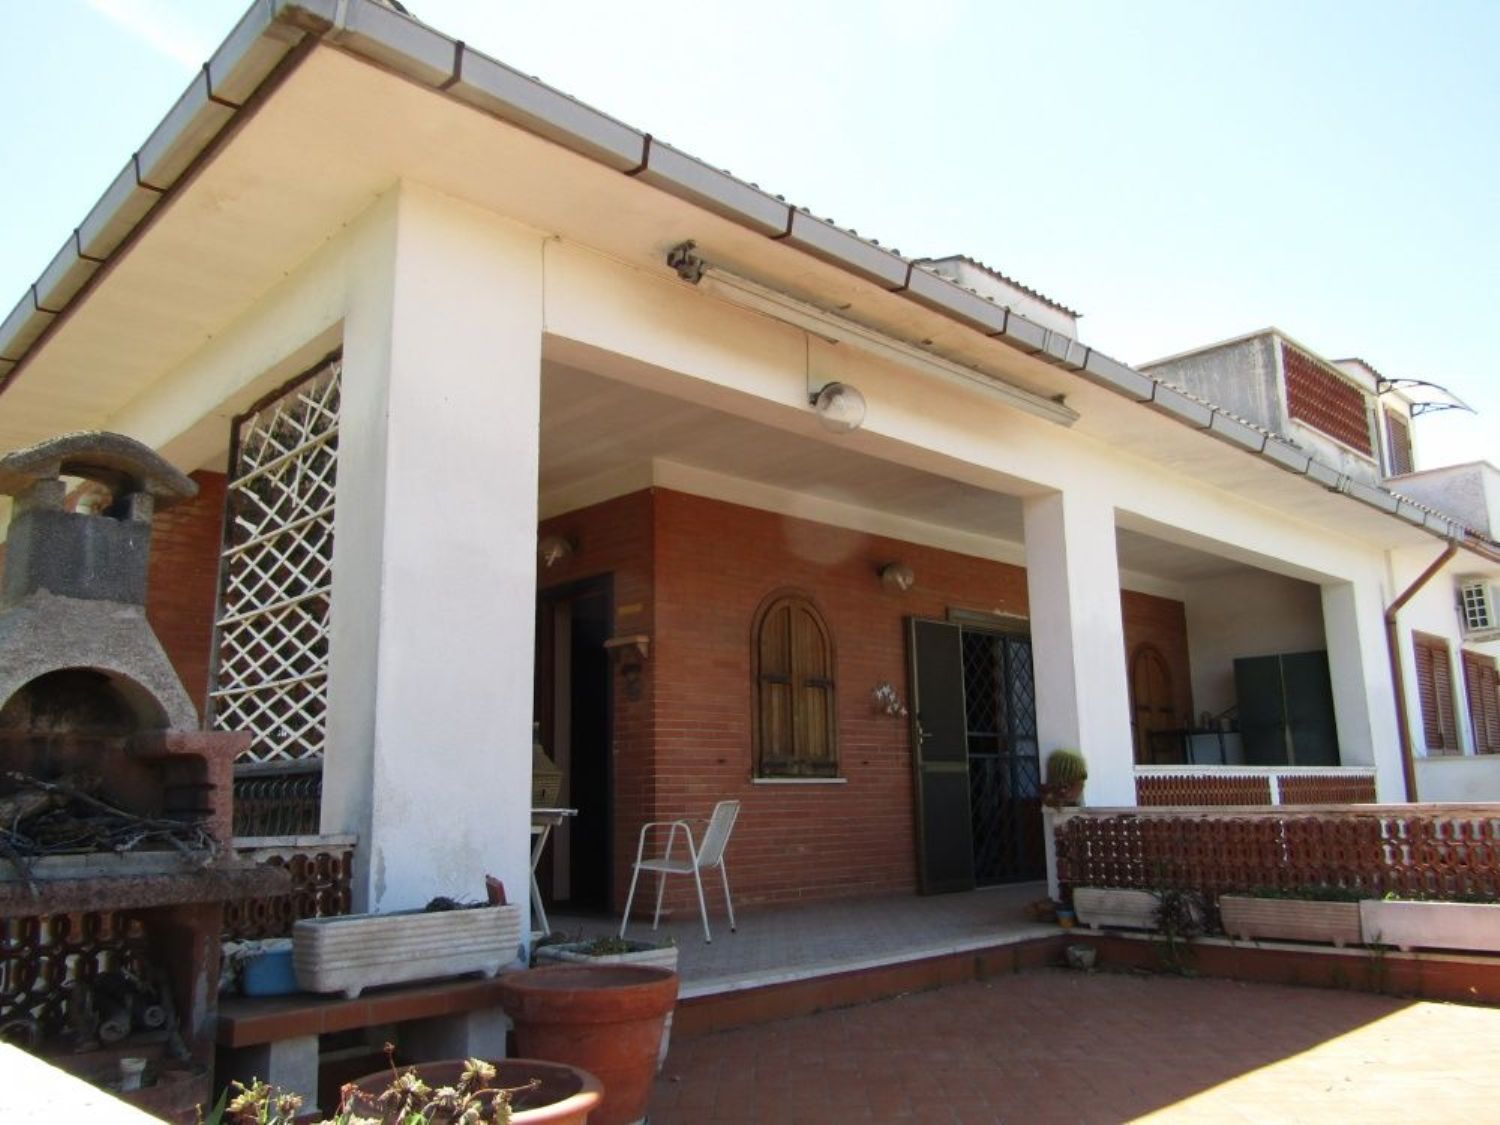 Villa Bifamiliare in vendita a Ardea, 7 locali, prezzo € 219.000 | CambioCasa.it